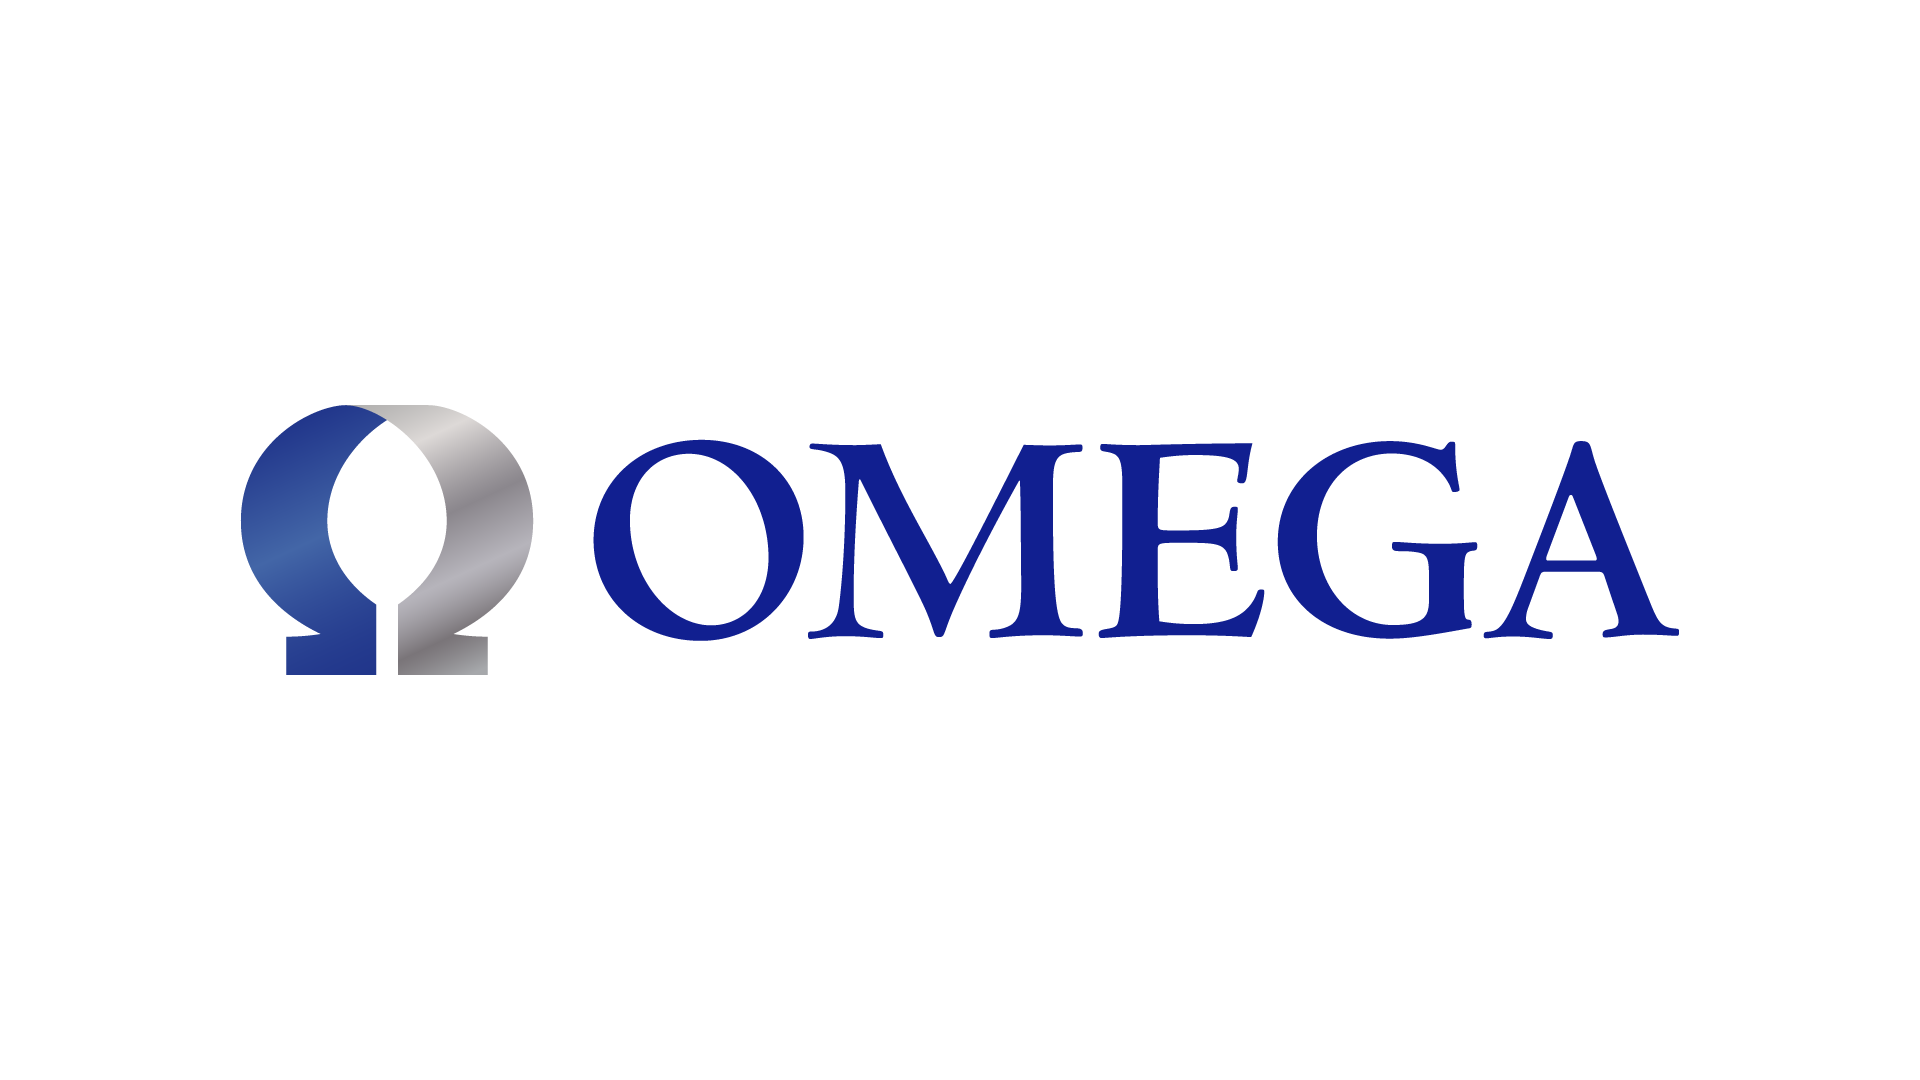 Omega Healthcare Investors, Inc.